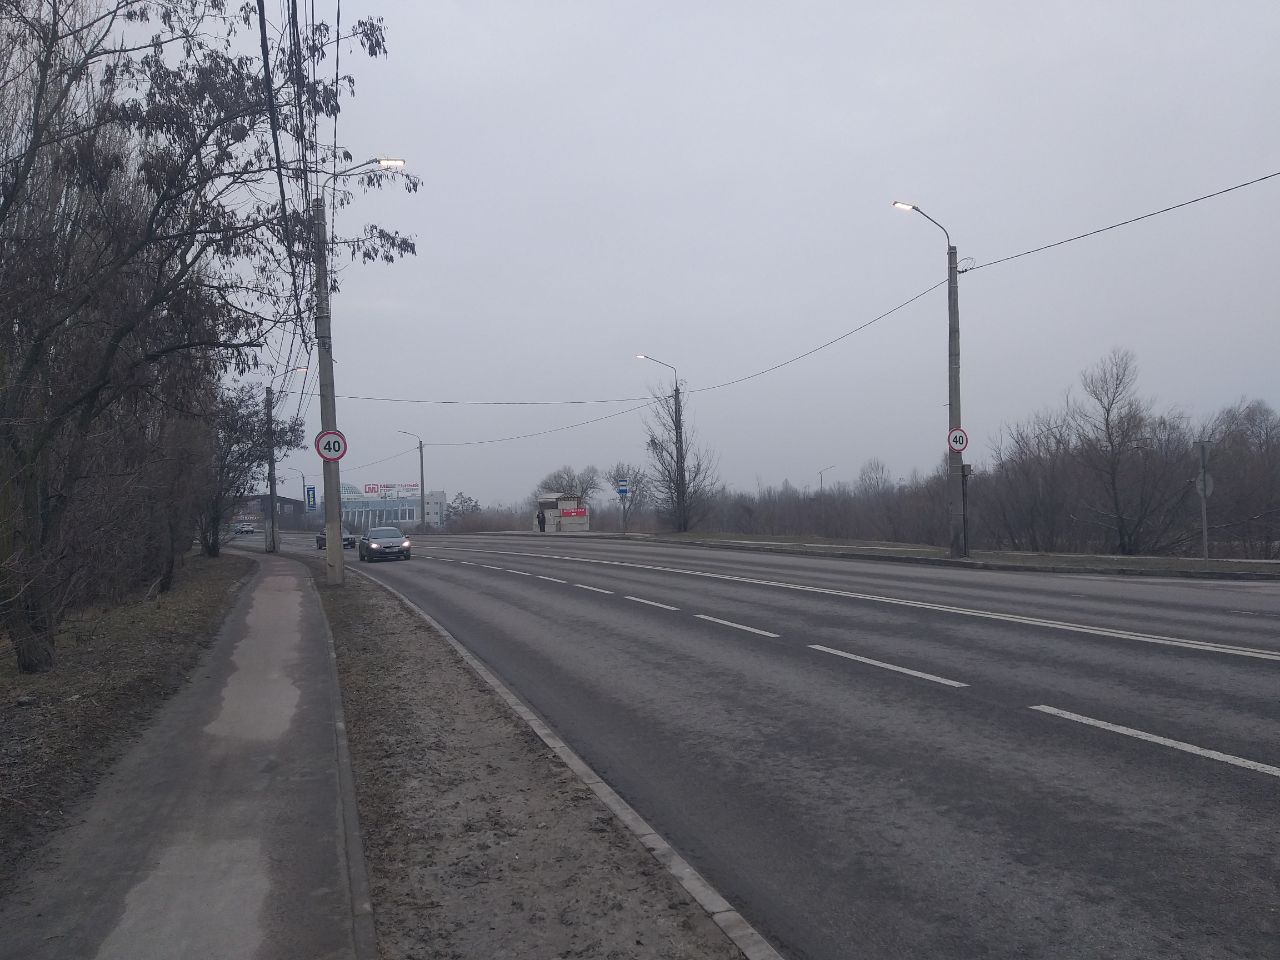 Максимальная скорость ограничена на участке автодороги улицы Костюкова до 40 км/ч.